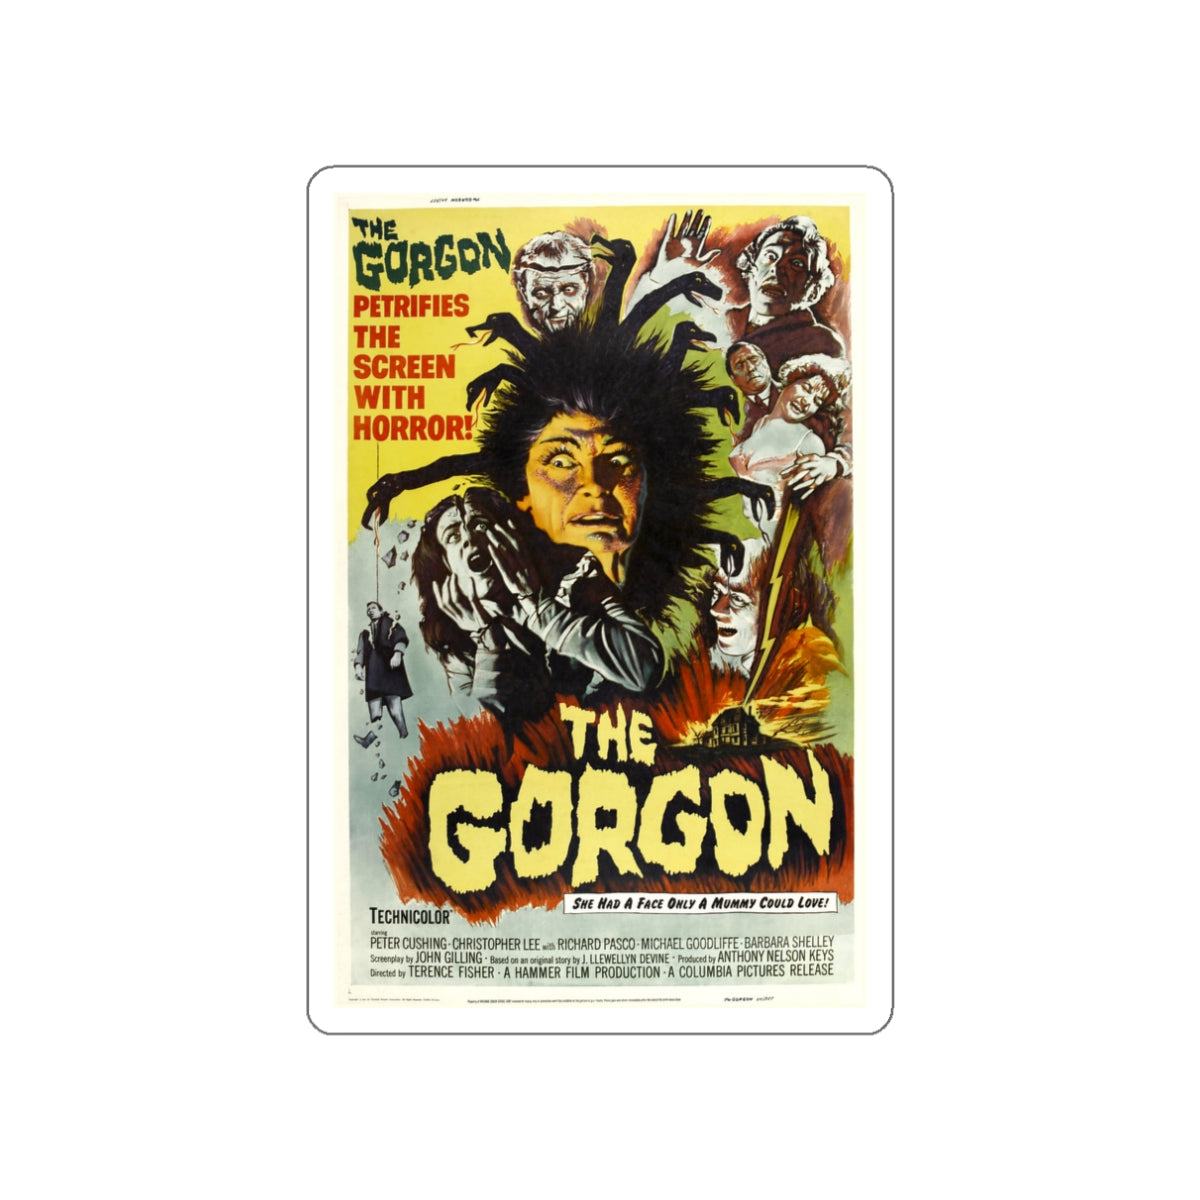 THE GORGON 1964 Movie Poster STICKER Vinyl Die-Cut Decal-White-The Sticker Space